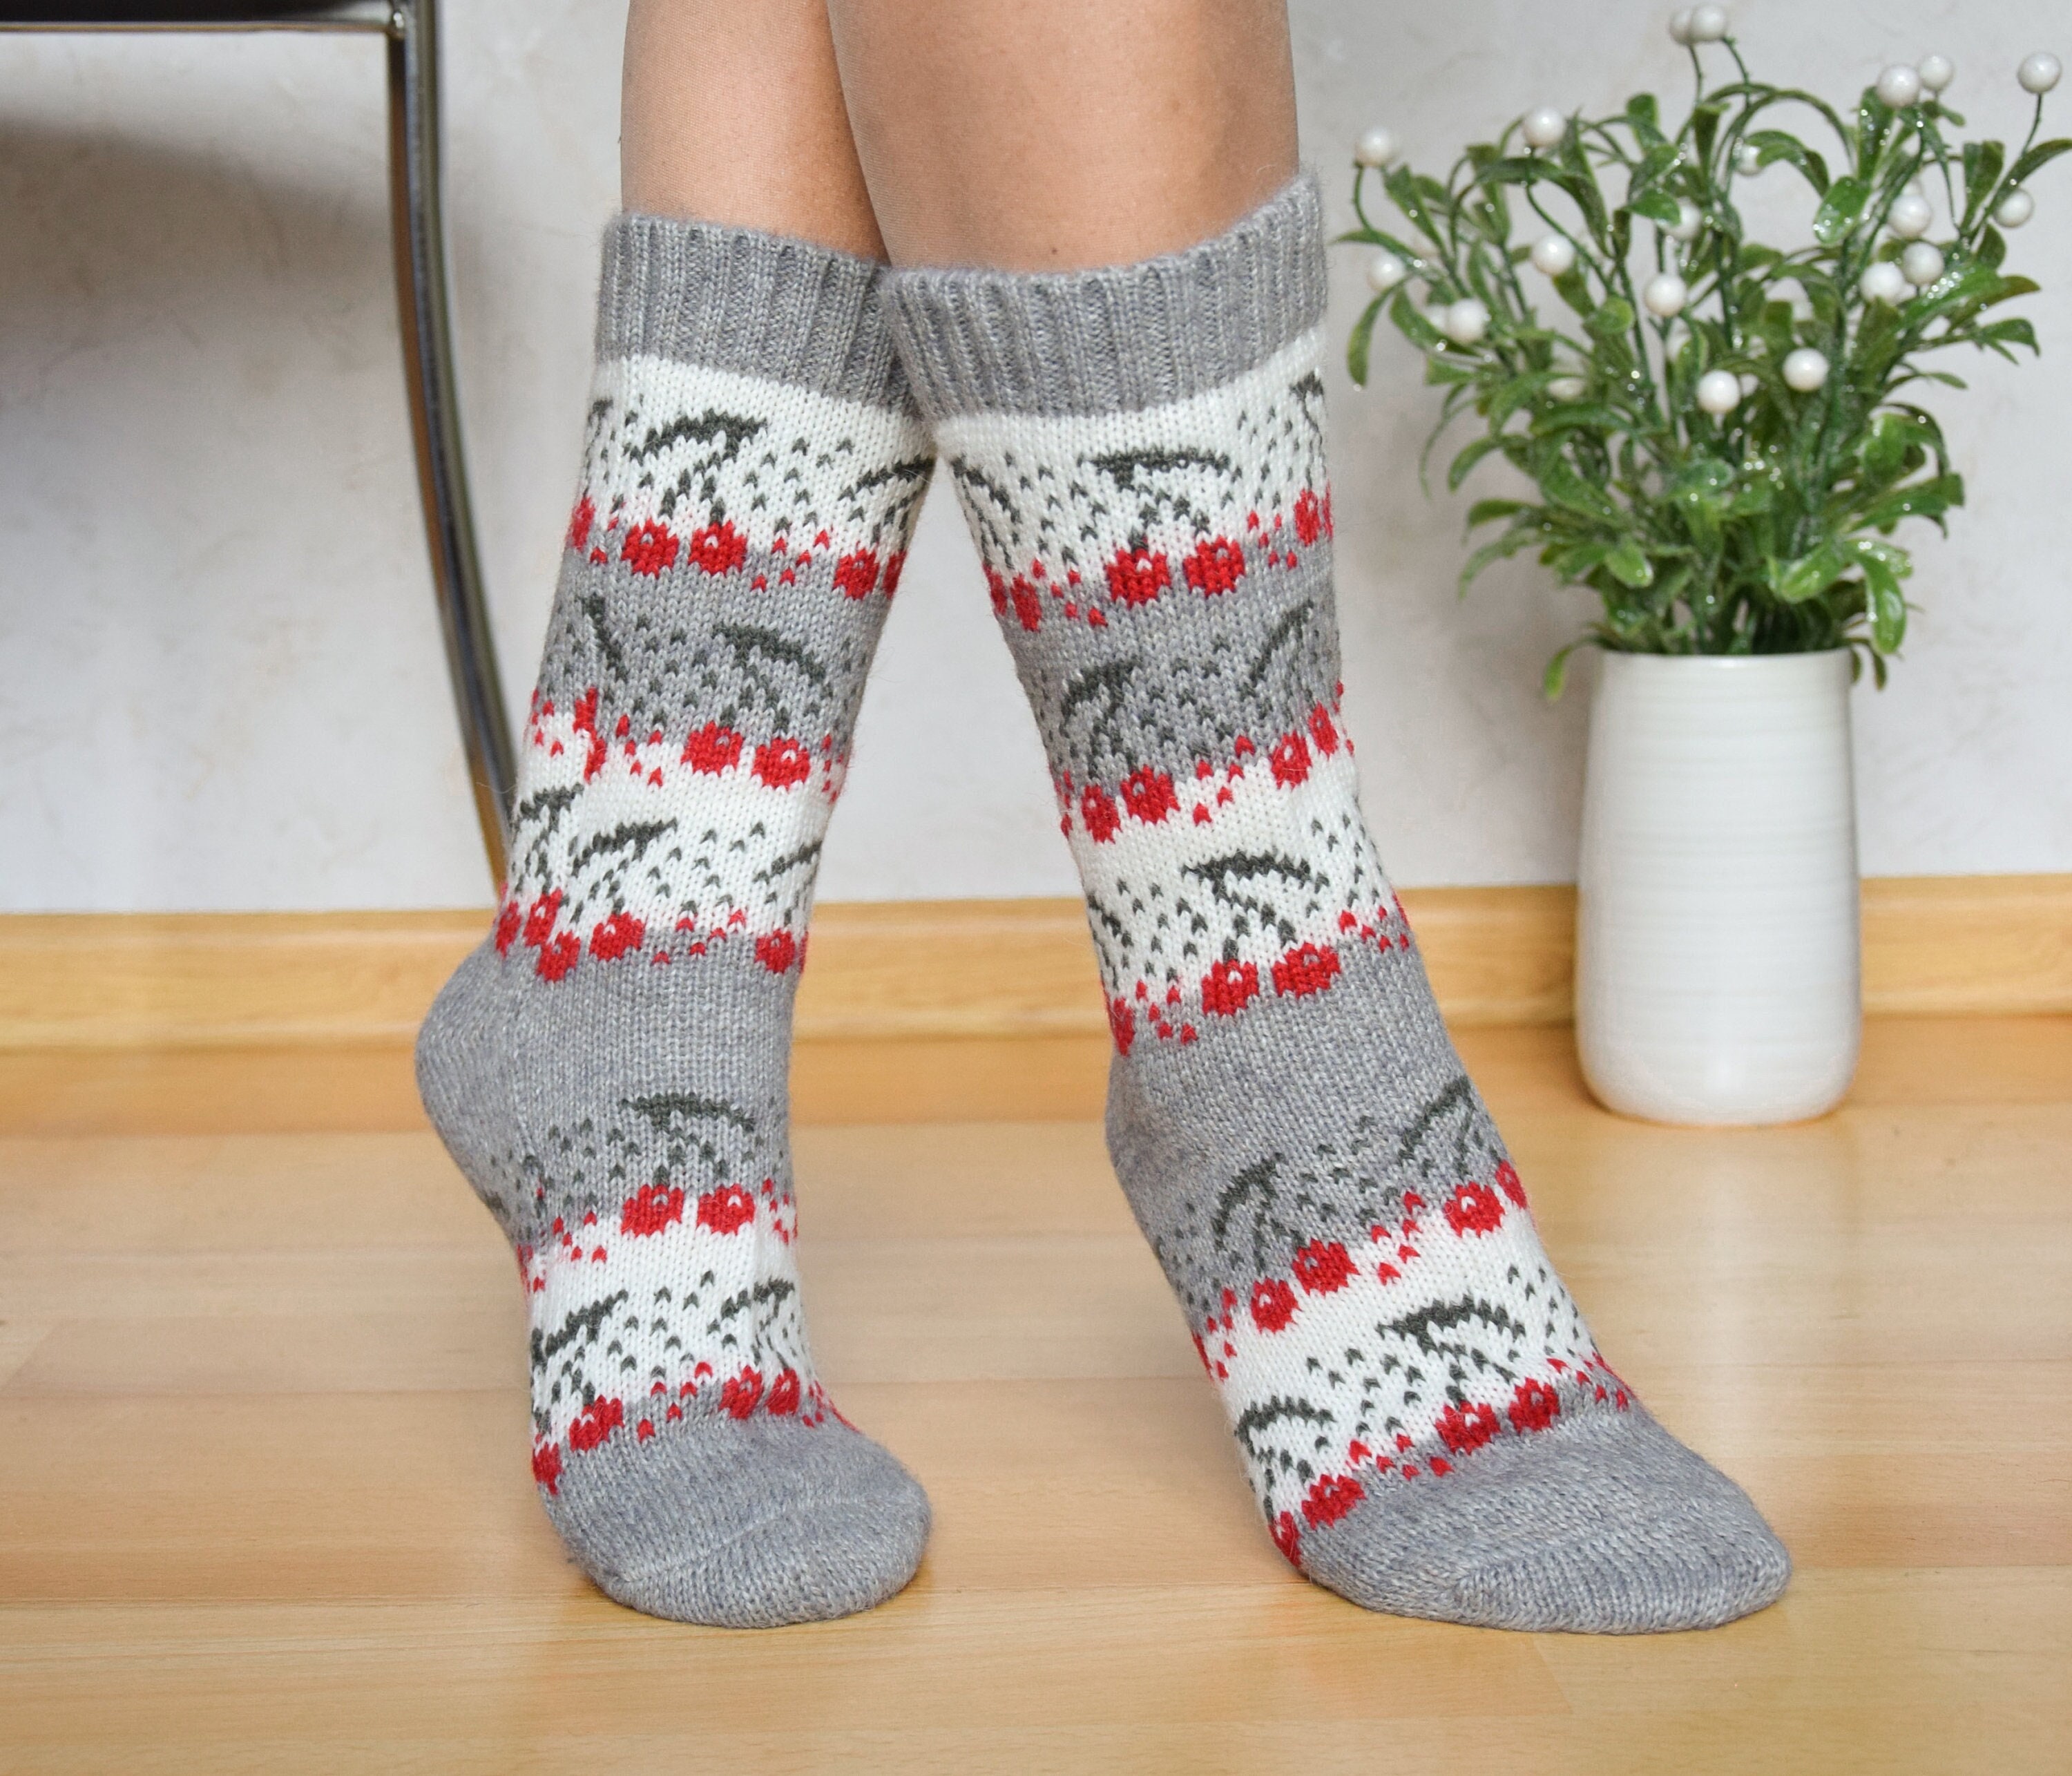 Japanese Wool Socks Etsy Denmark